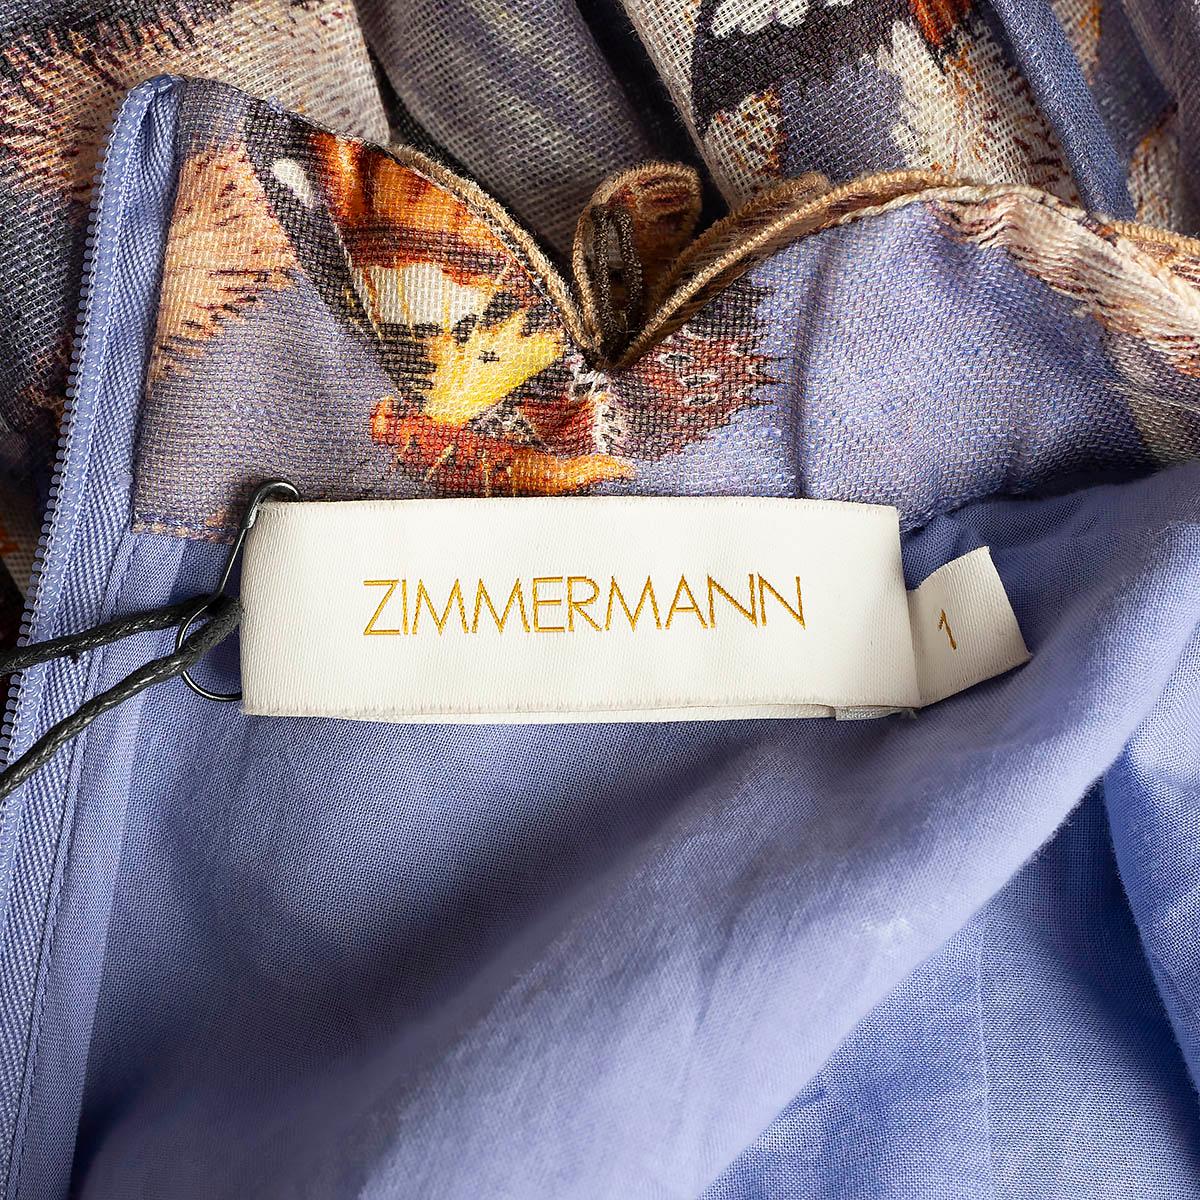 ZIMMERMANN Pandanus purple linen 2020 BOTANICA BUTTERFLY MINI Dress 1 S For Sale 1